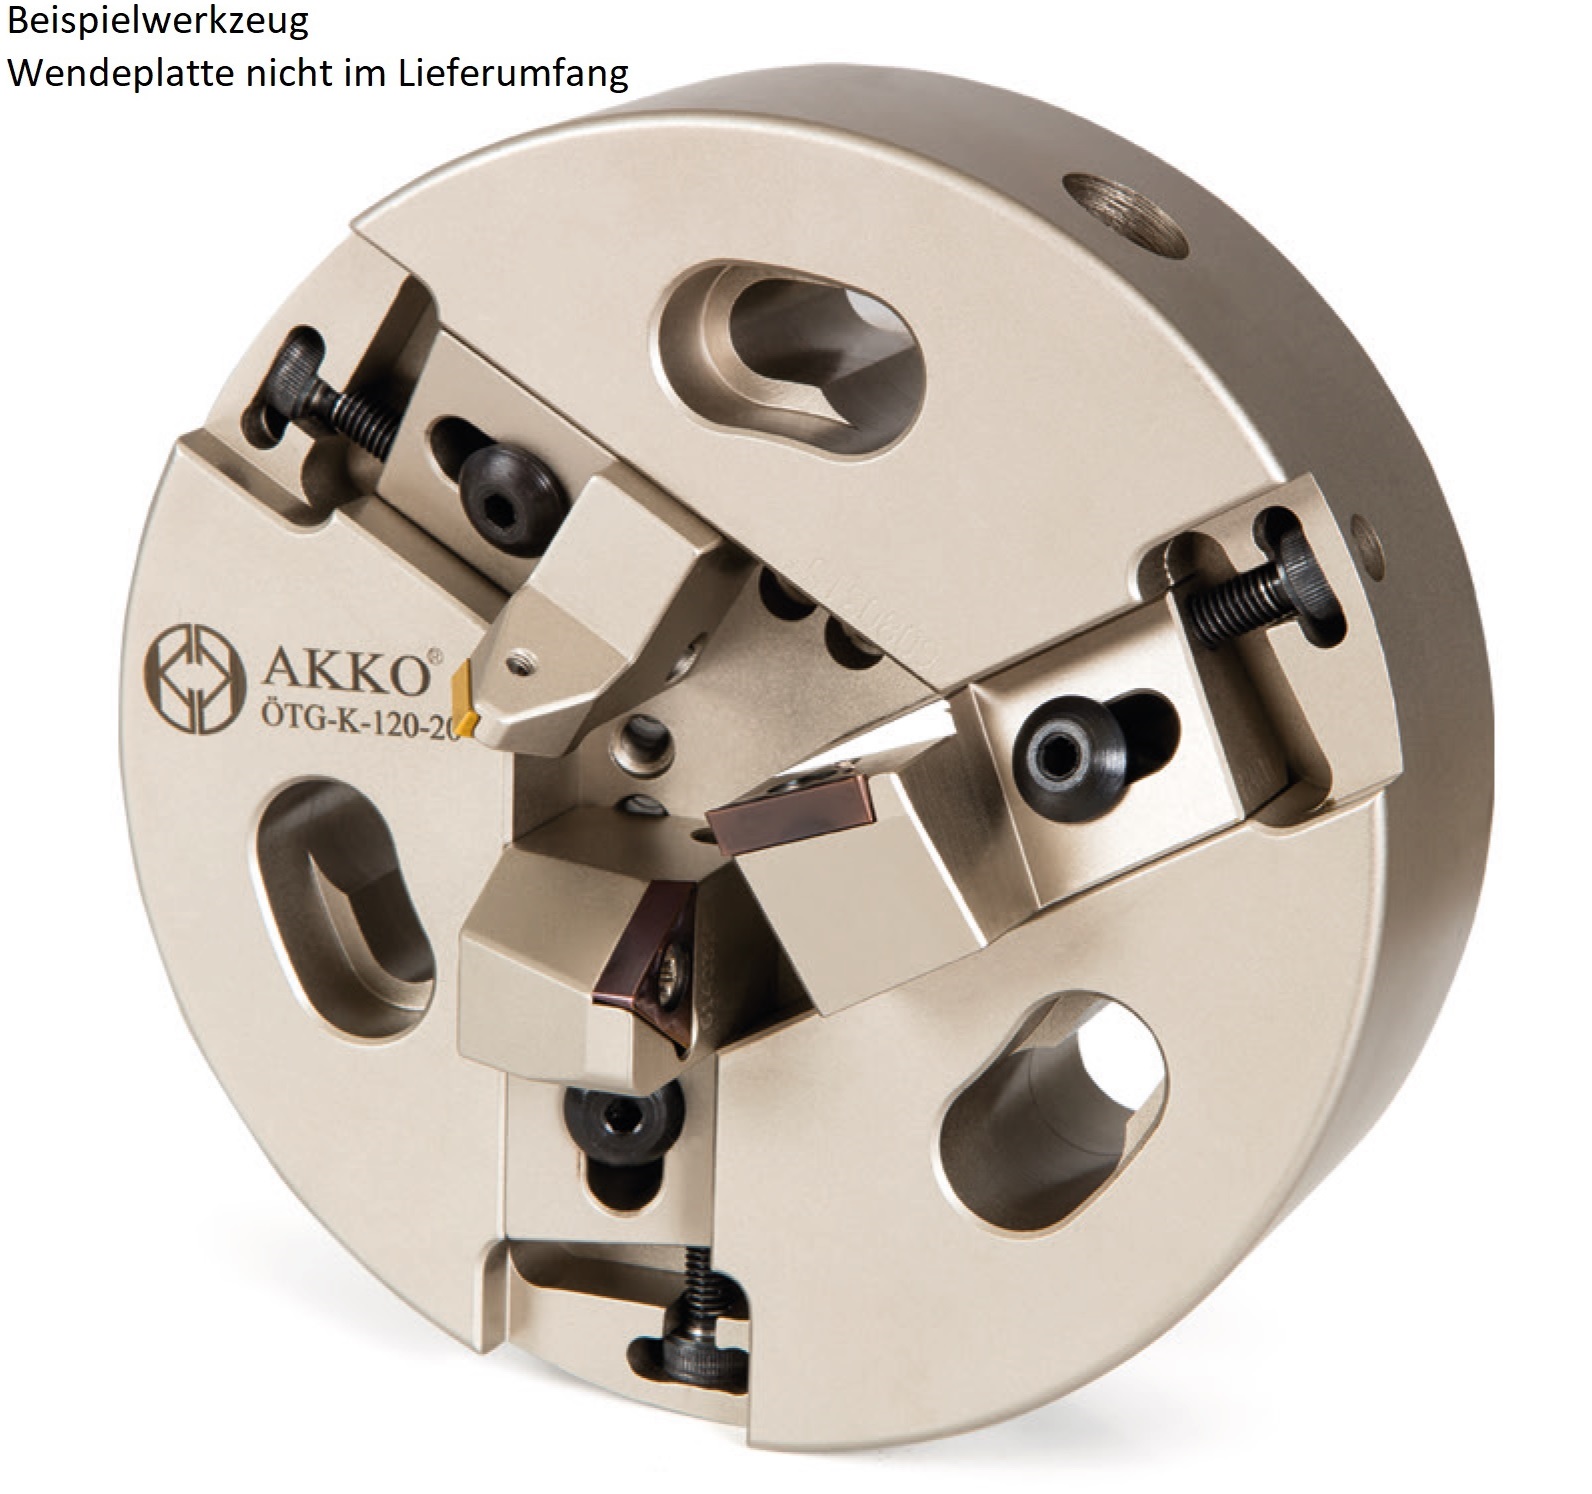 AKKO-Rohrenden-Anfaswerkzeug Dmax 27-52 mm, Dmin 18-36 mm, kompatibel mit ISO-Wendeplatte TC.. 1102.. und TC.. 16T3.. 
